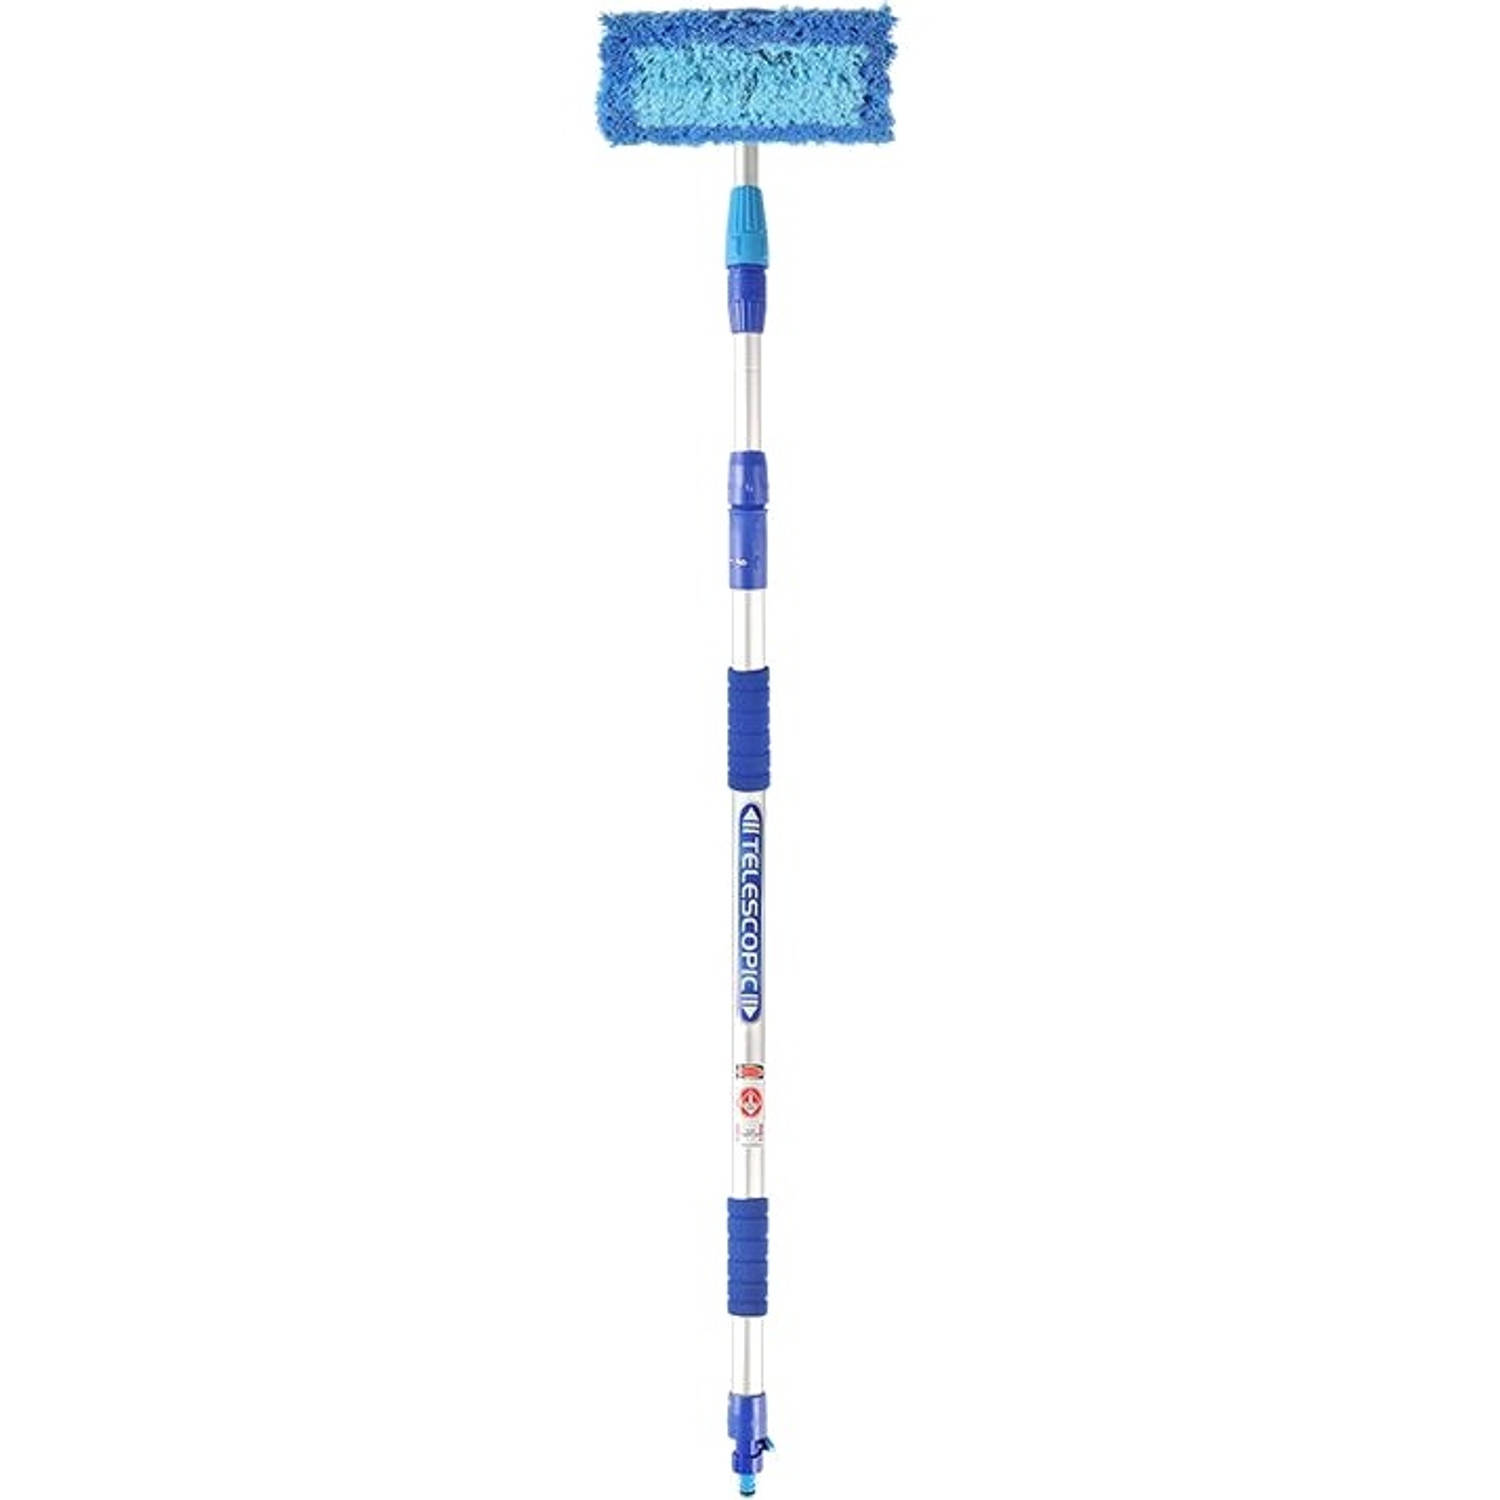 woonadres Gasvormig Republiek ProPlus wasborstel Heavy Duty met telescopische steel 3 meter blauw |  Blokker